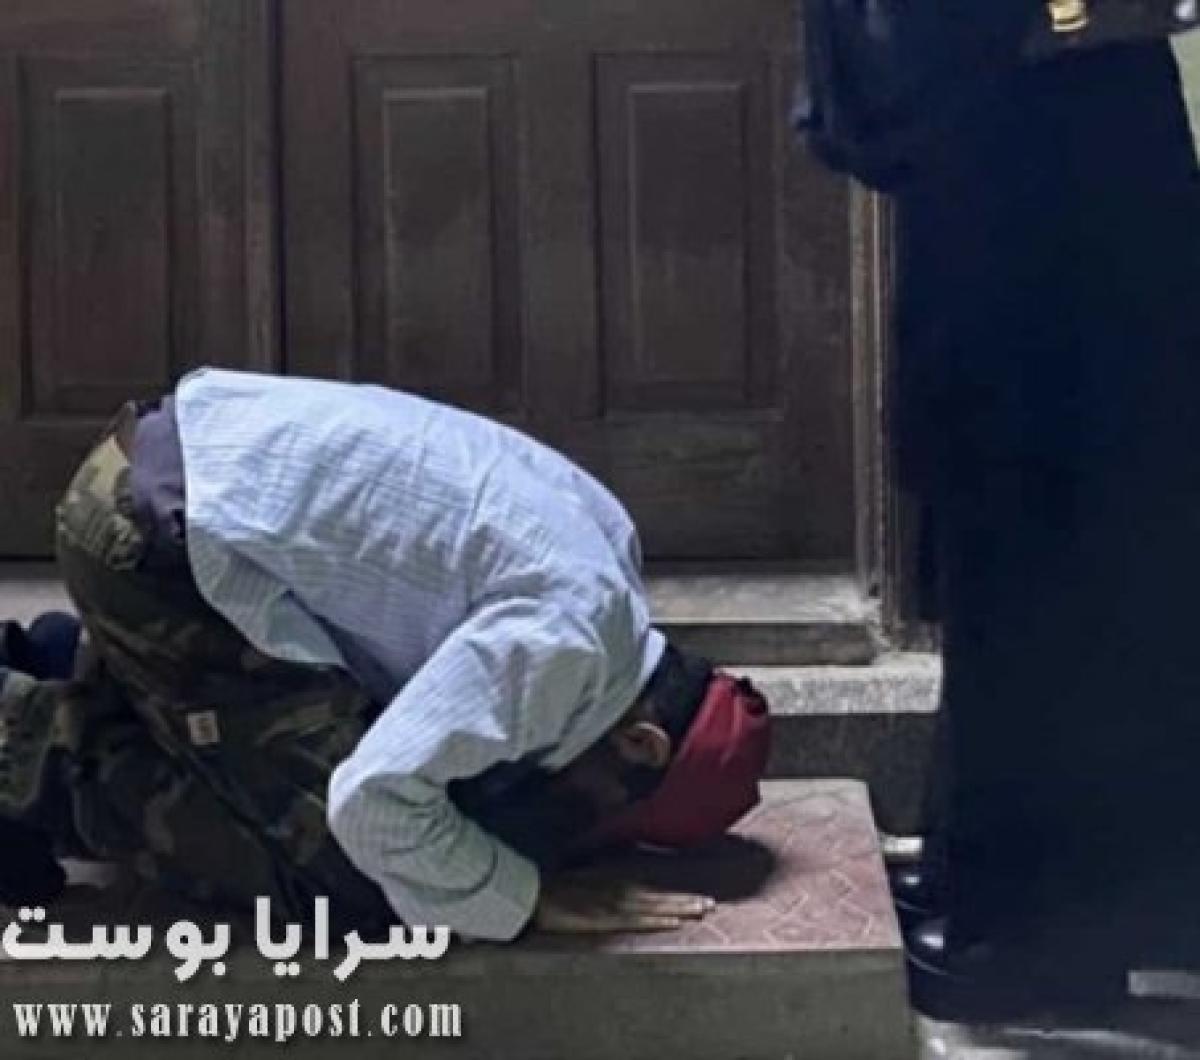 سعودي يسجد لفتاة أمام مسجد بجدة.. والأمن يعتقله (صور)